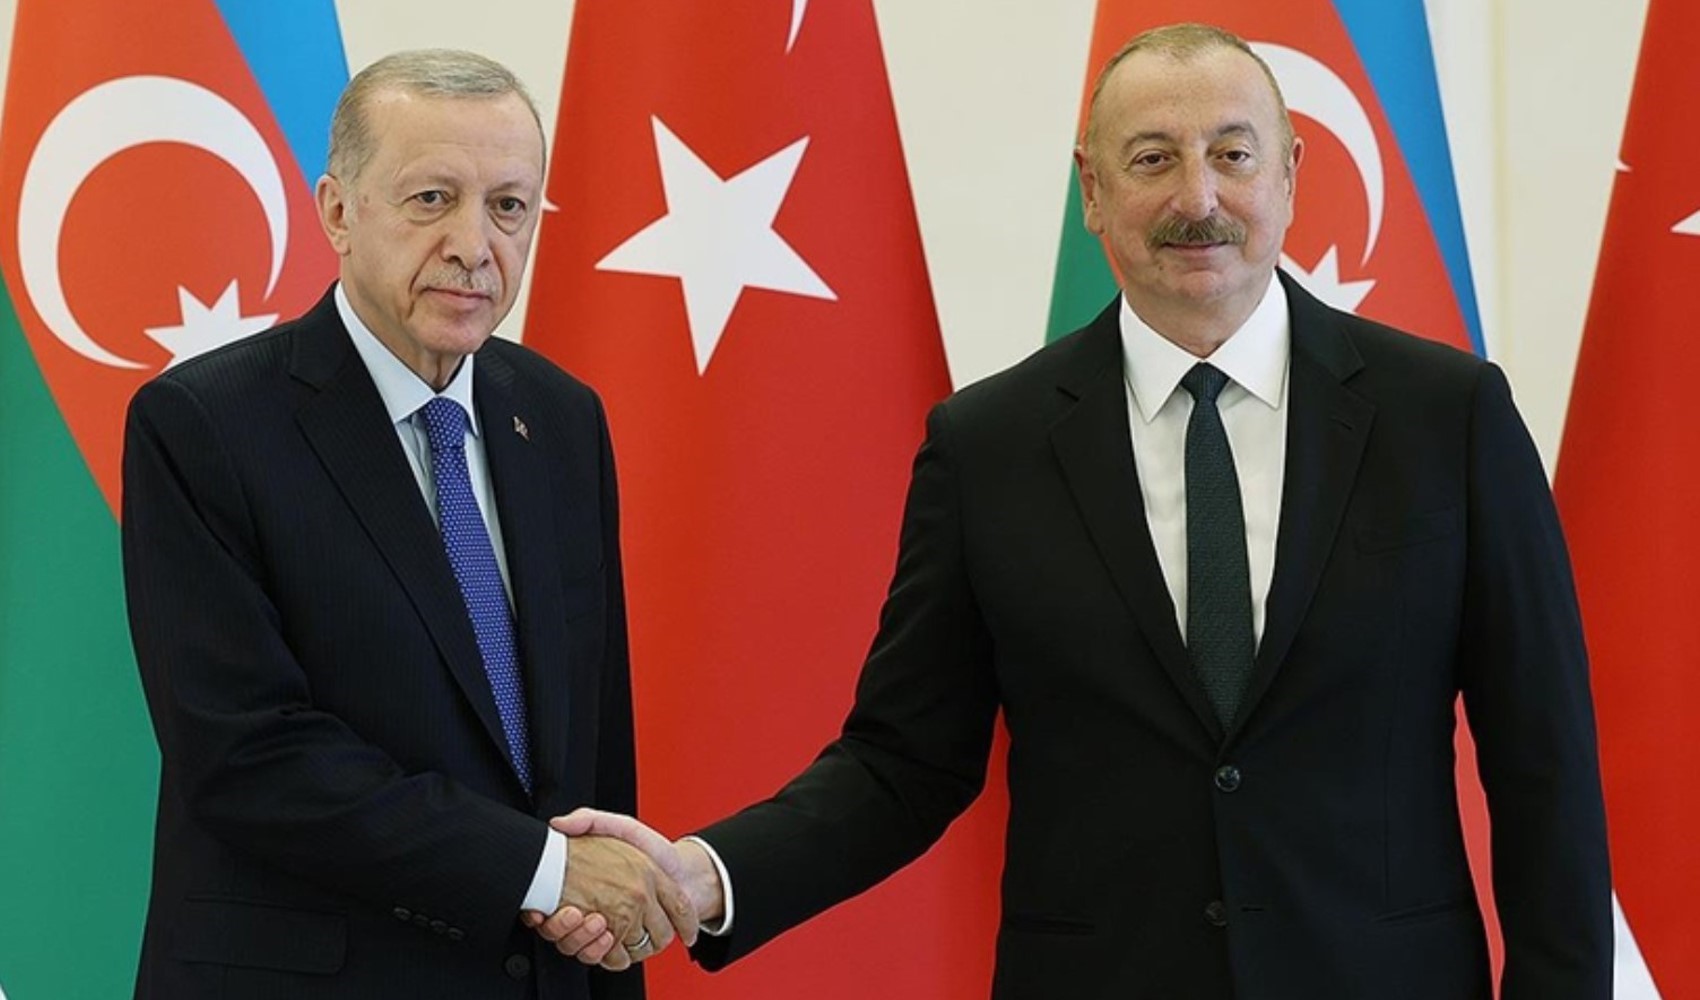 Cumhurbaşkanı ve AKP Genel Başkanı Recep Tayyip Erdoğan, Azerbaycan Cumhurbaşkanı Aliyev ile telefonda görüştü